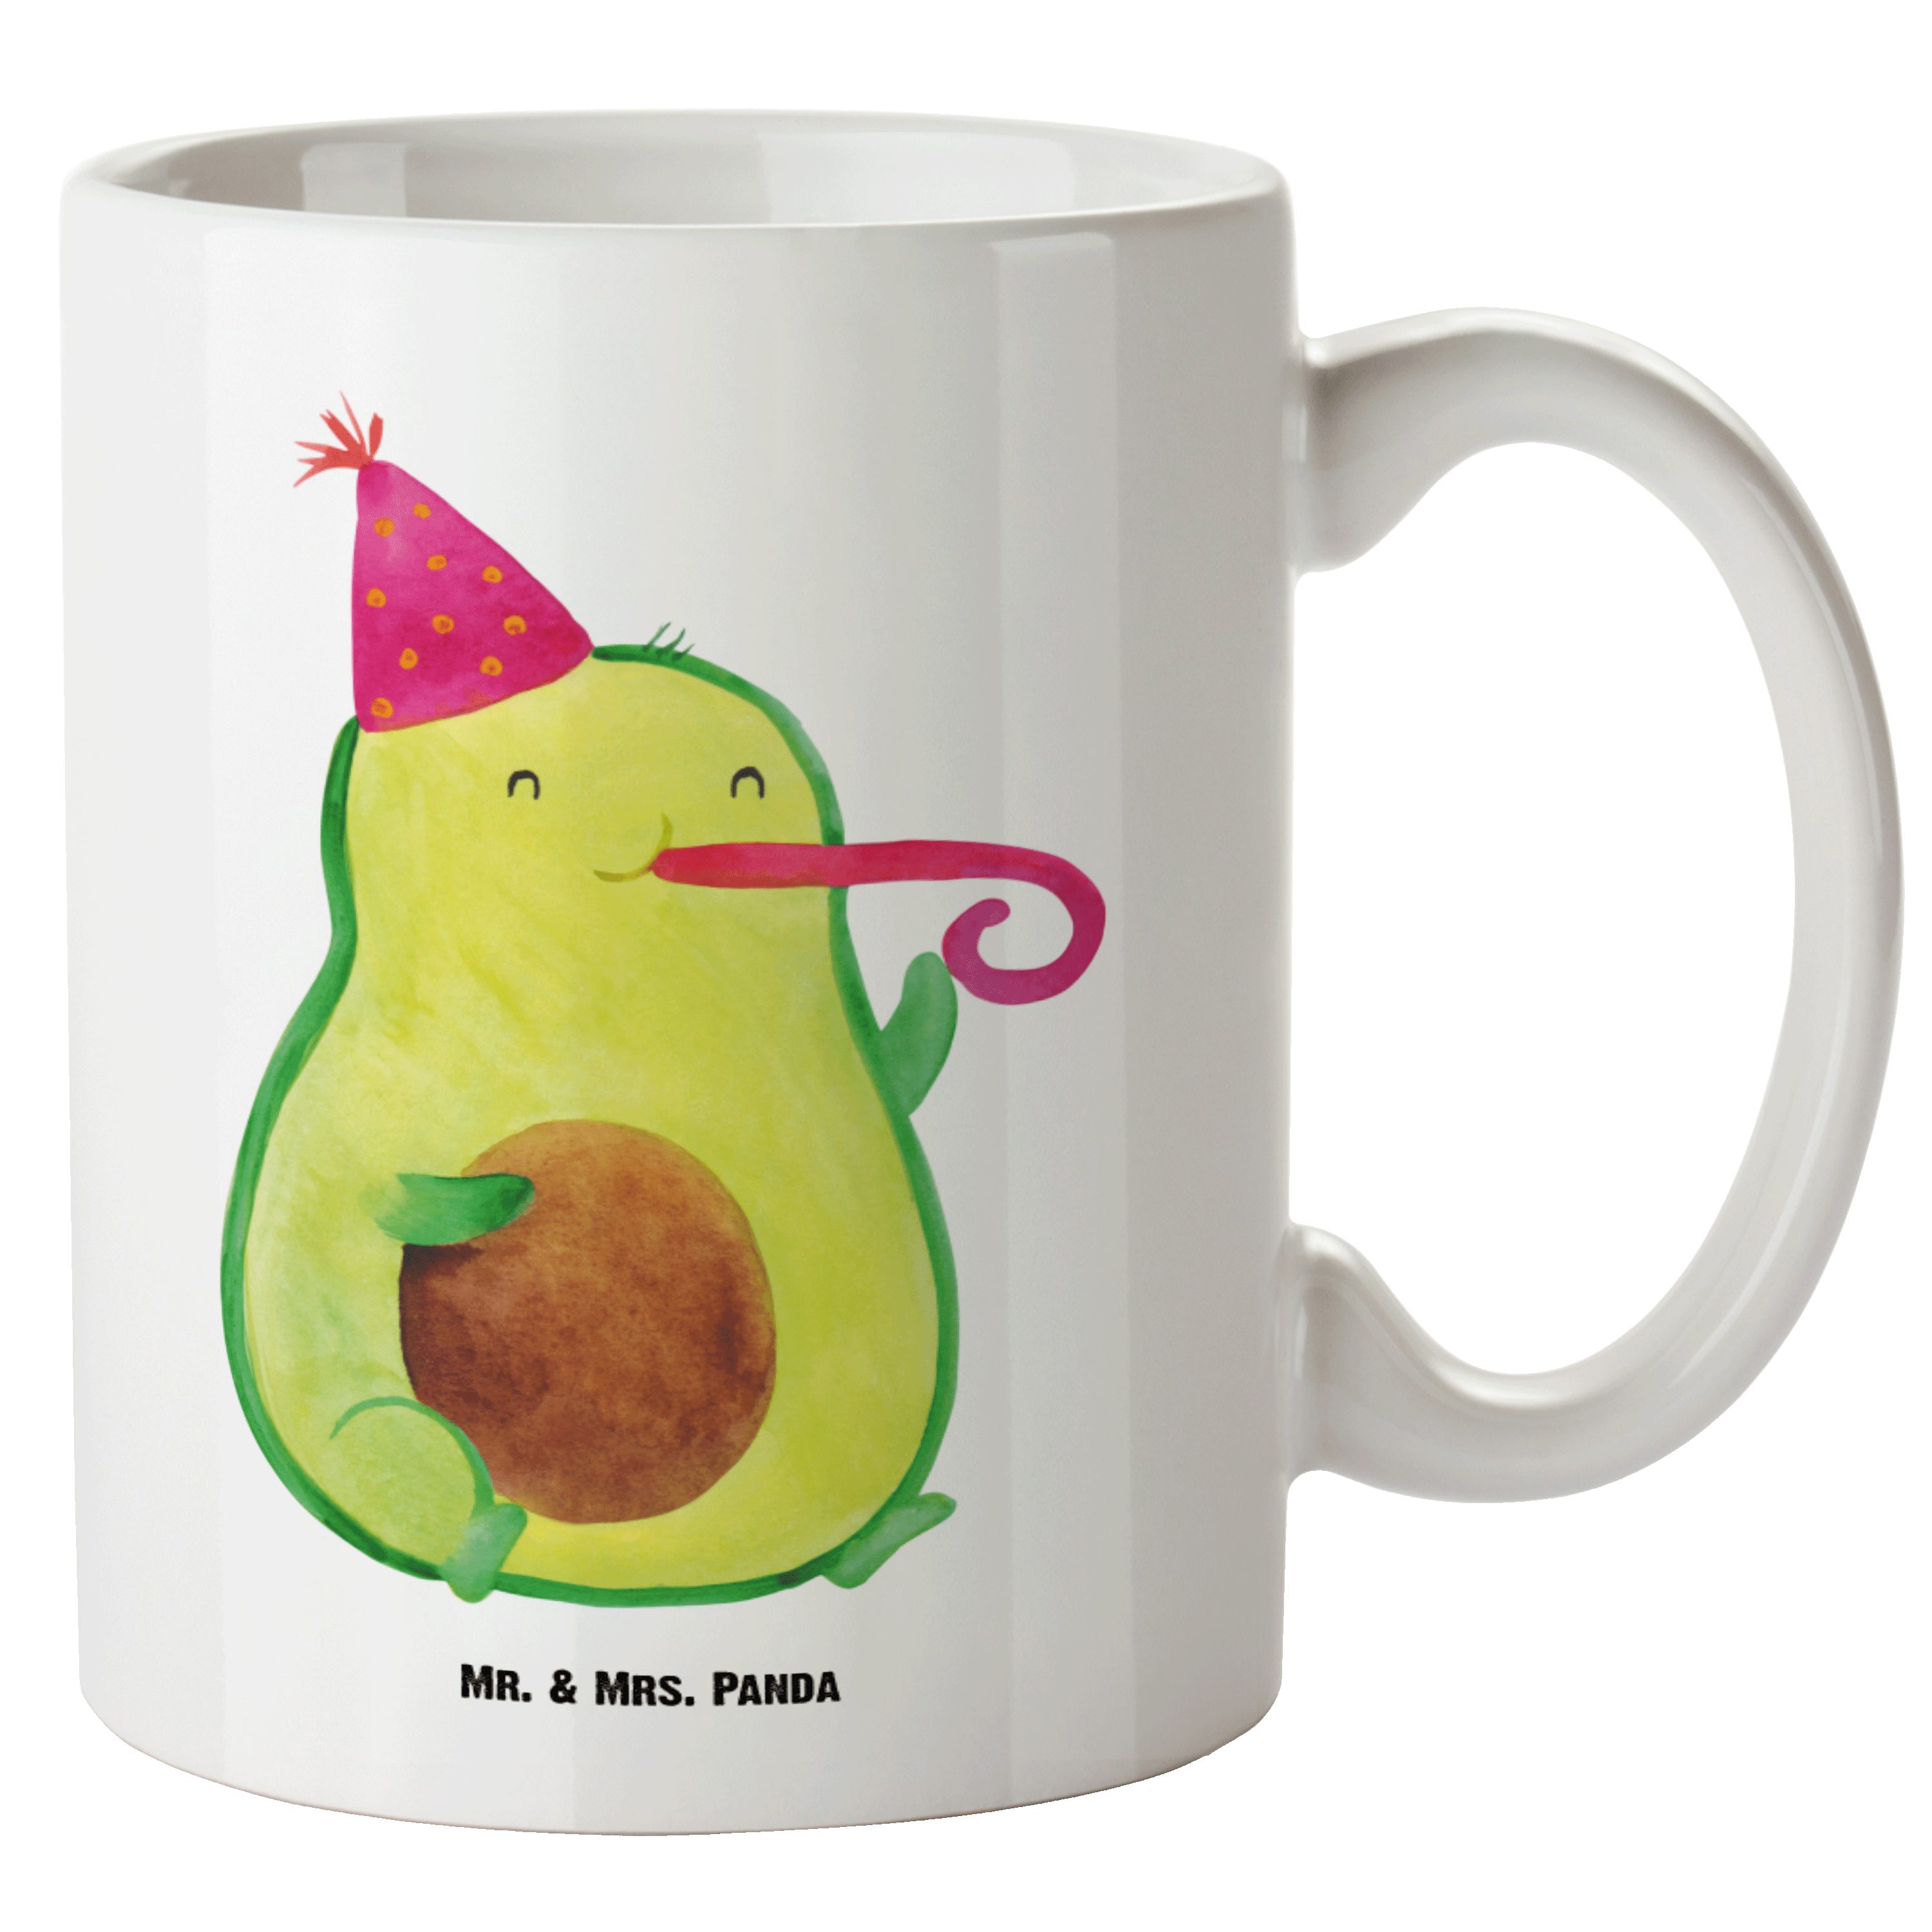 Mr. & Mrs. Panda Tasse Avocado Partyhupe - Weiß - Geschenk, Fete, Groß, XL Tasse, Große Tass, XL Tasse Keramik